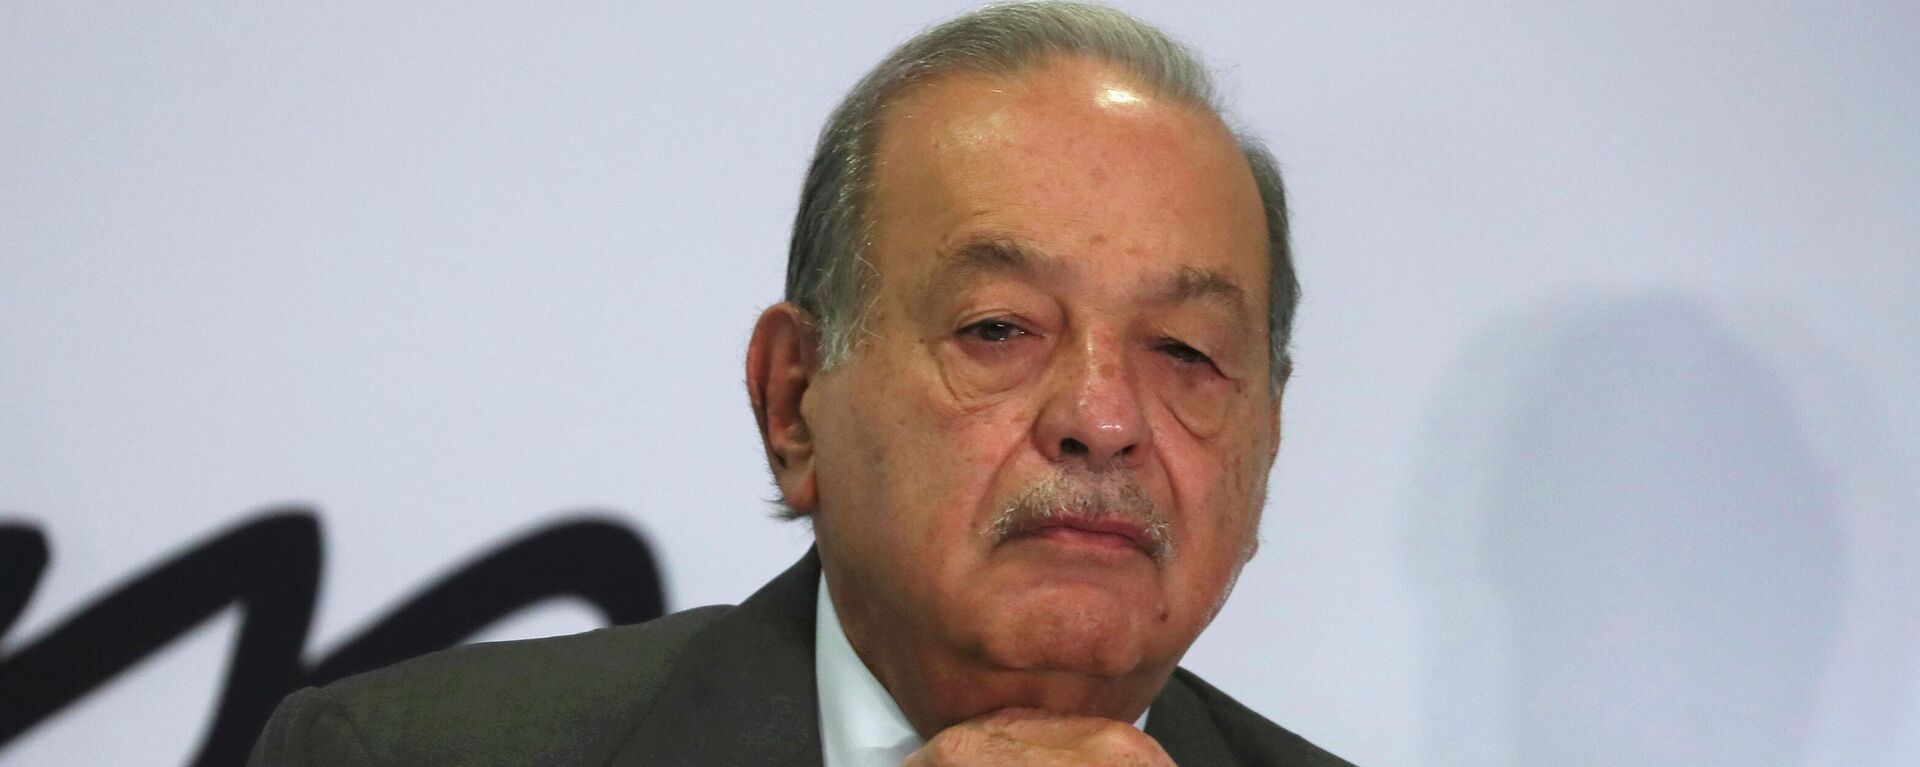 Carlos Slim, el magnate mexicano - Sputnik Mundo, 1920, 27.04.2022